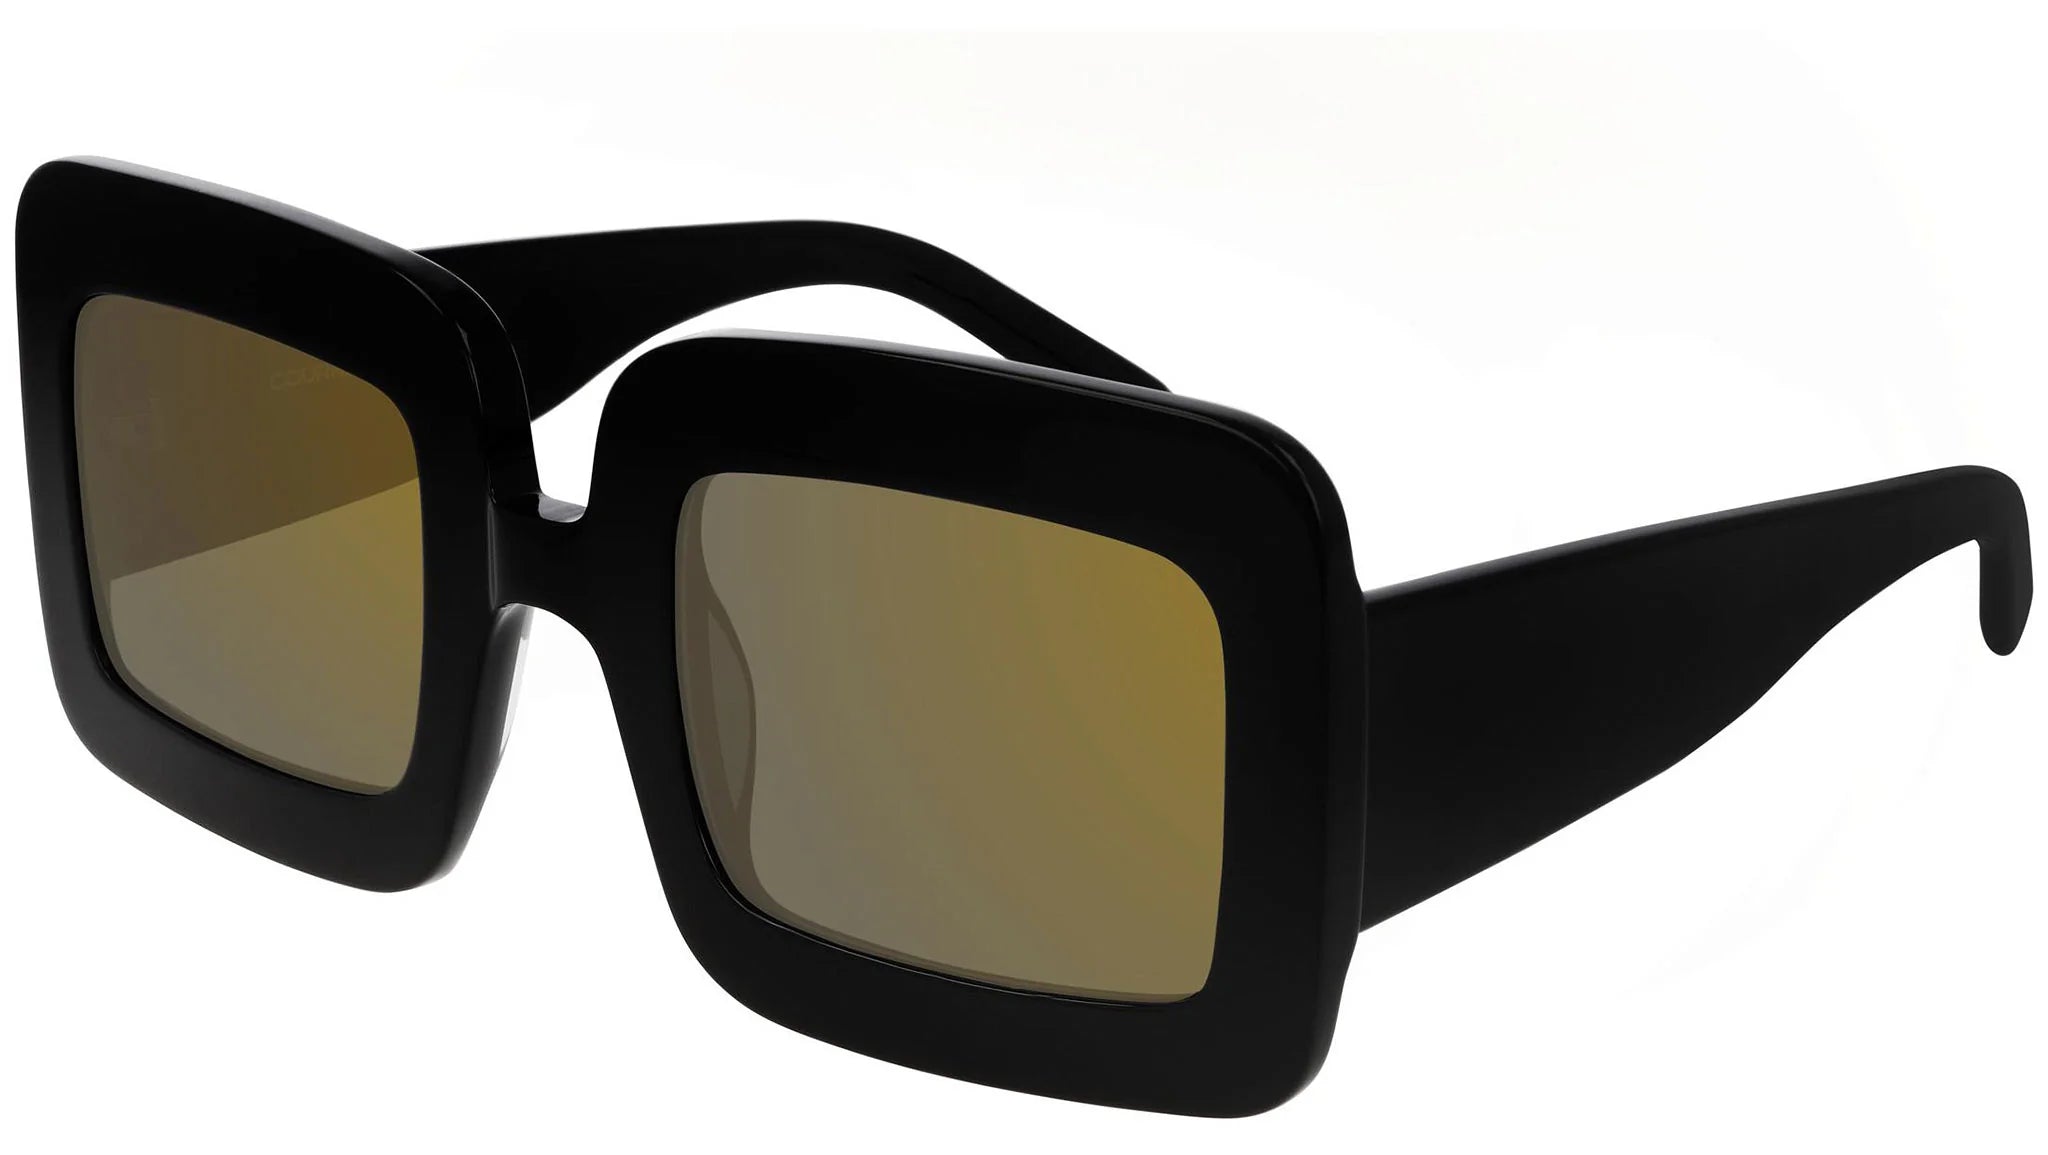 Courrèges Women's Sunglasses Oversized Square Black/Copper CL2001-001 52